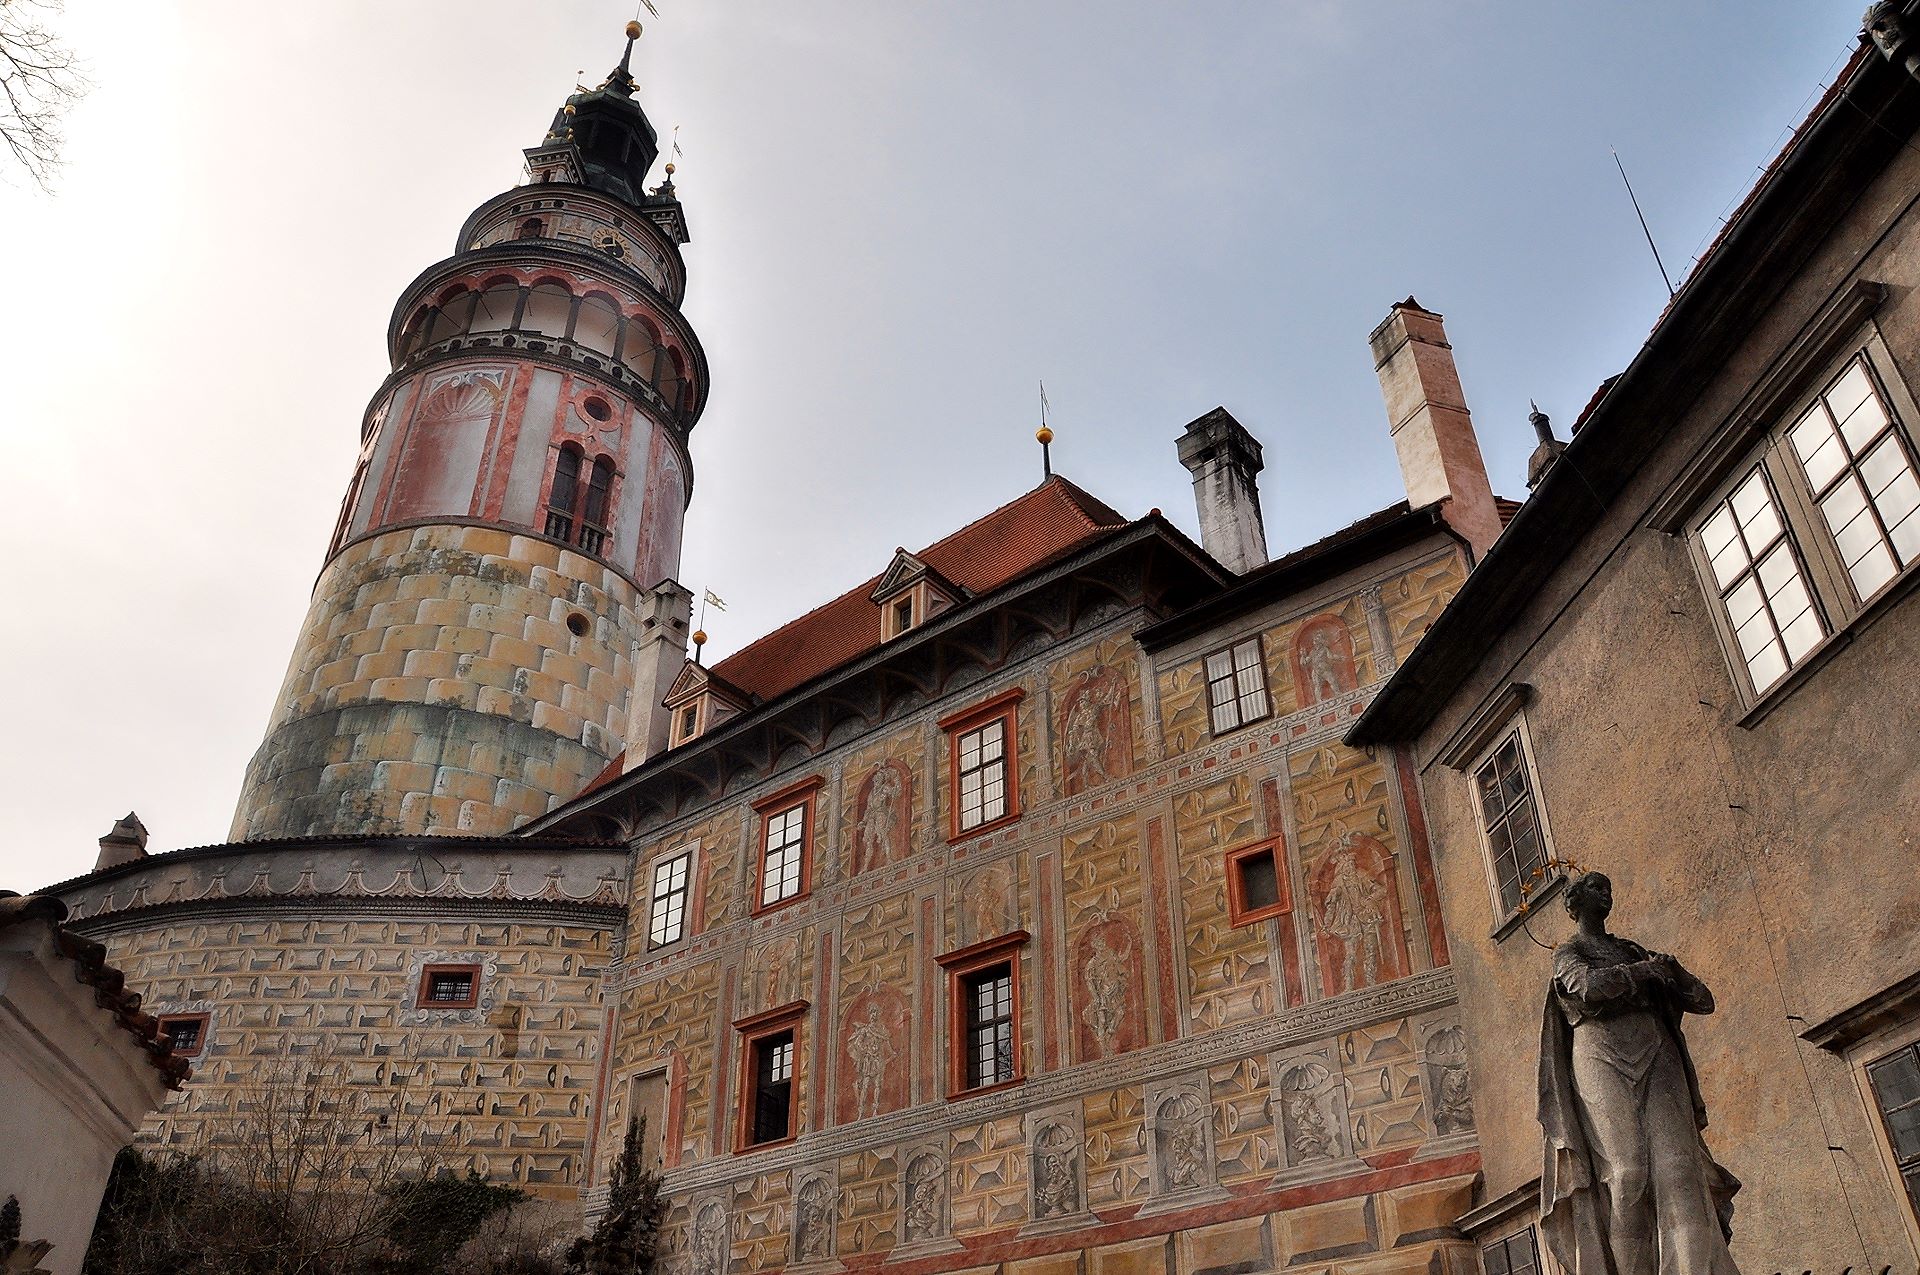 Der älteste Teil der Burg mit Renaissancedekor aus dem 16. Jhdt.